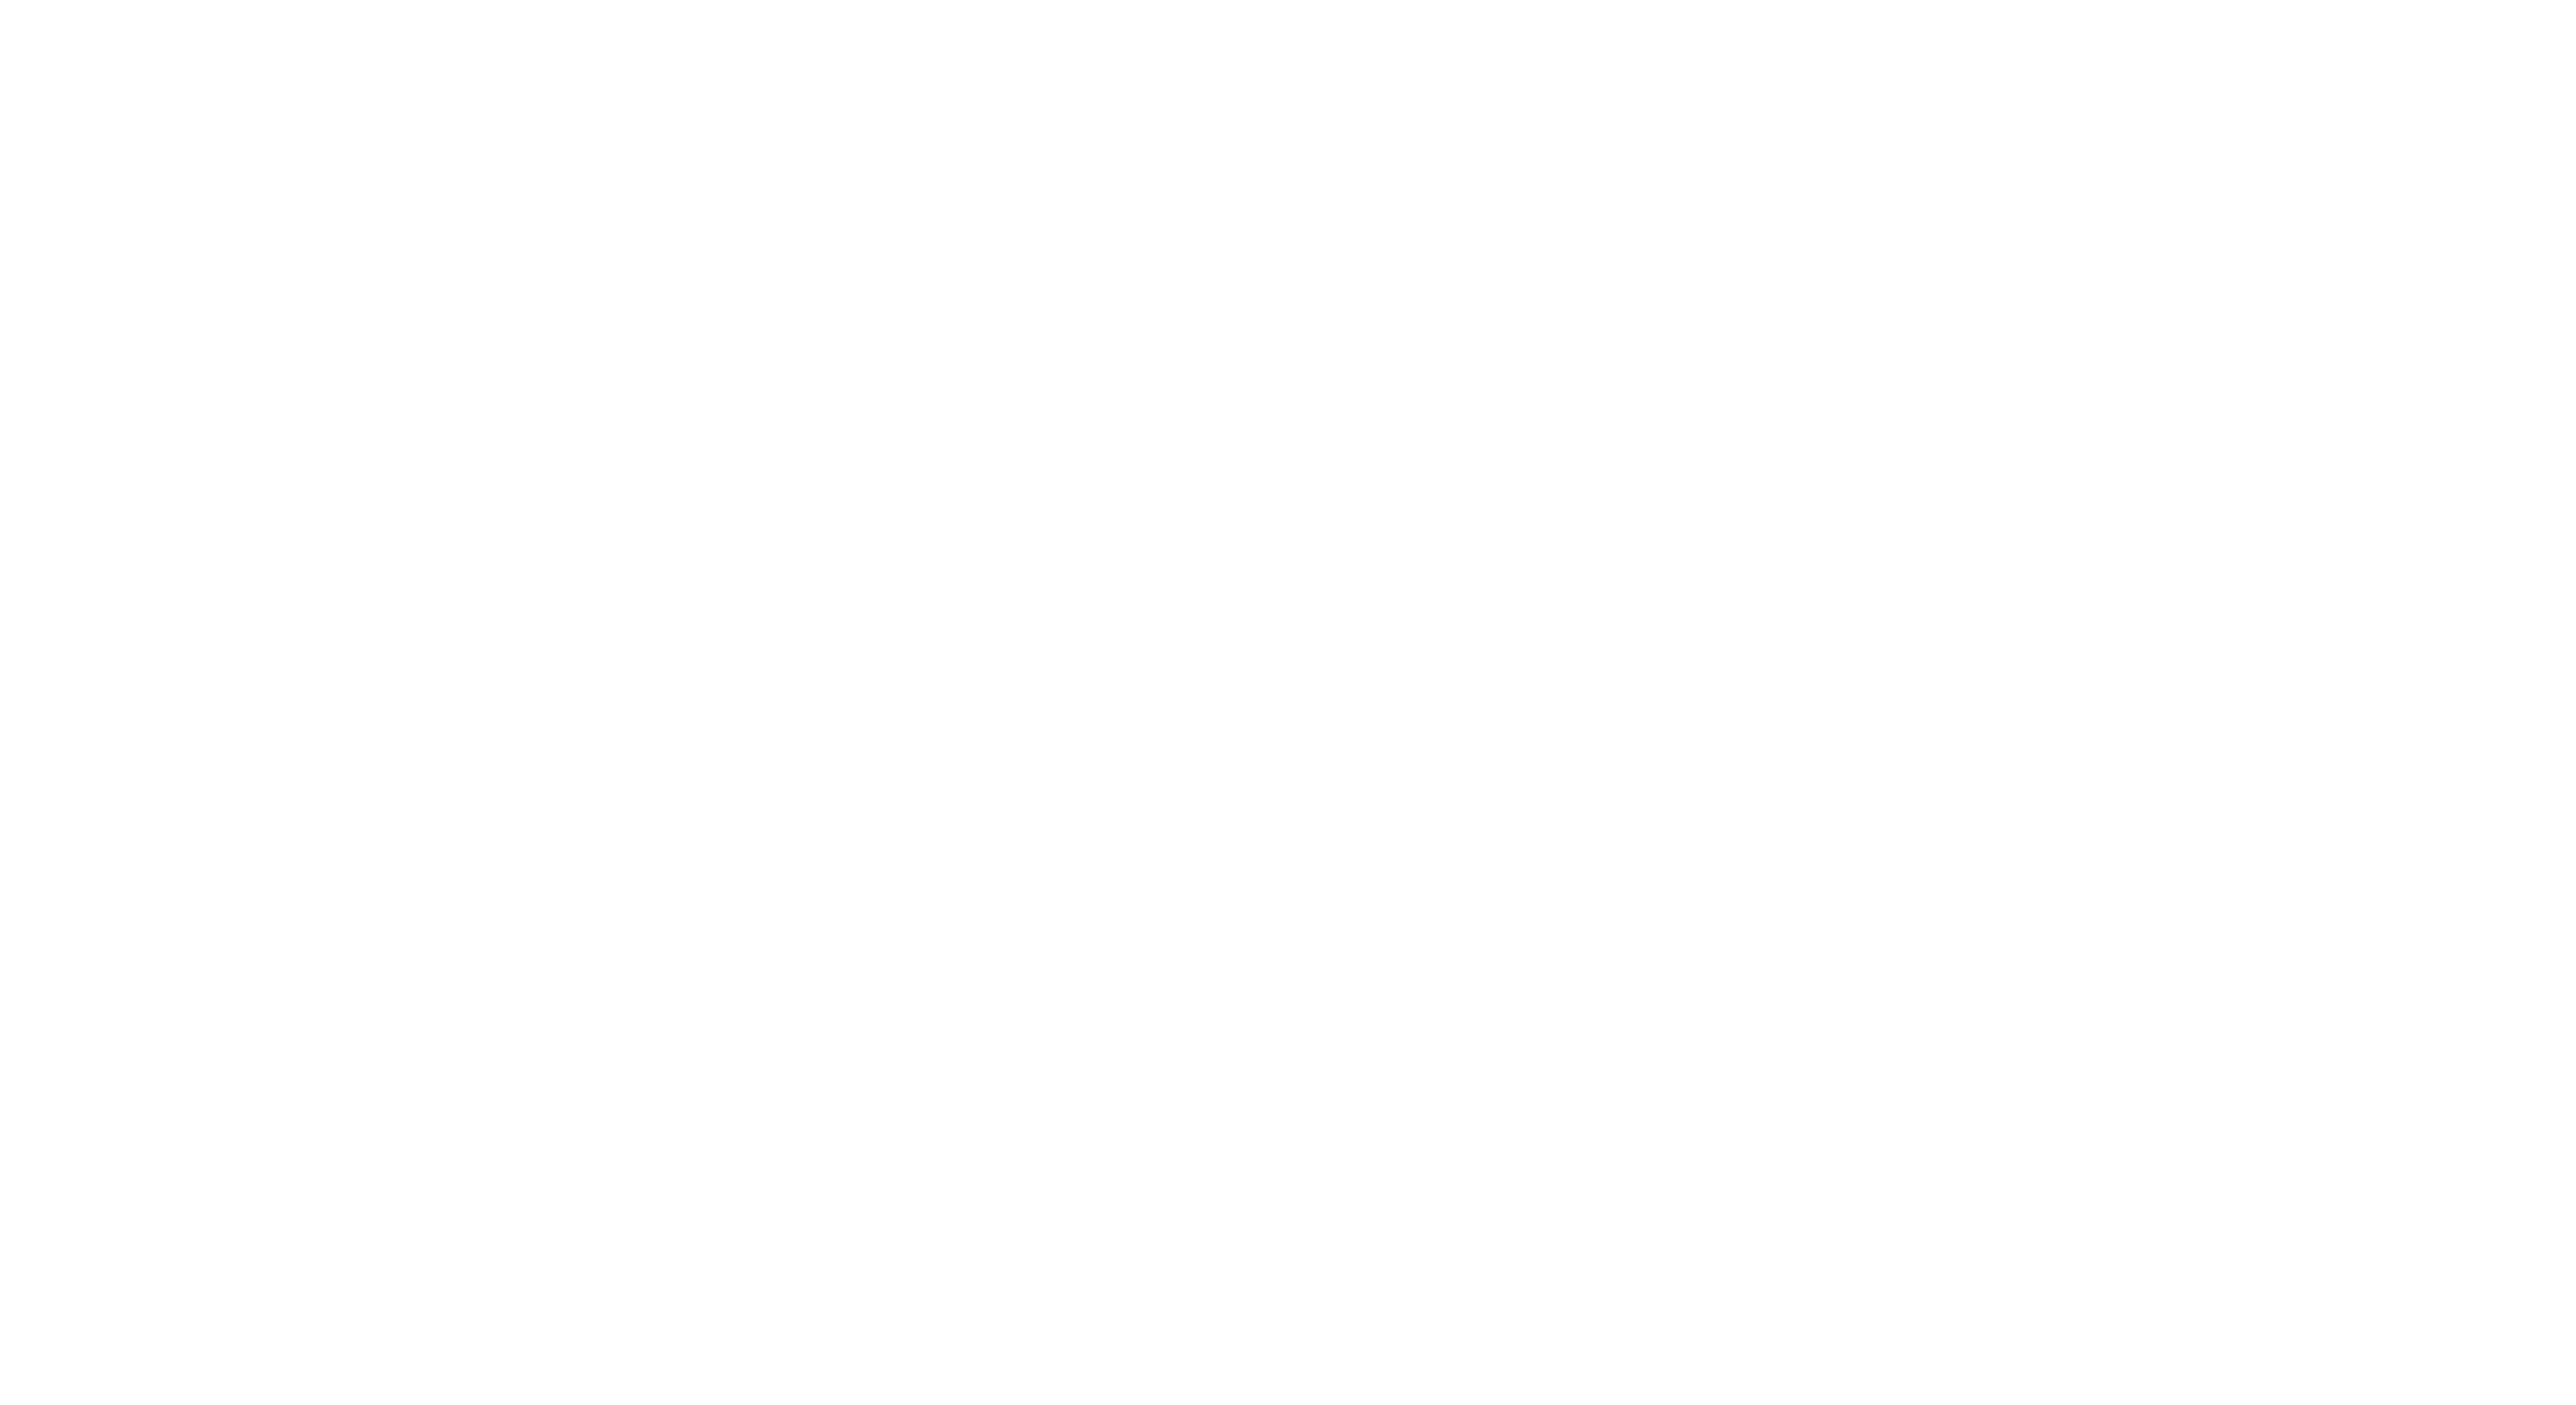 TAWI Studio